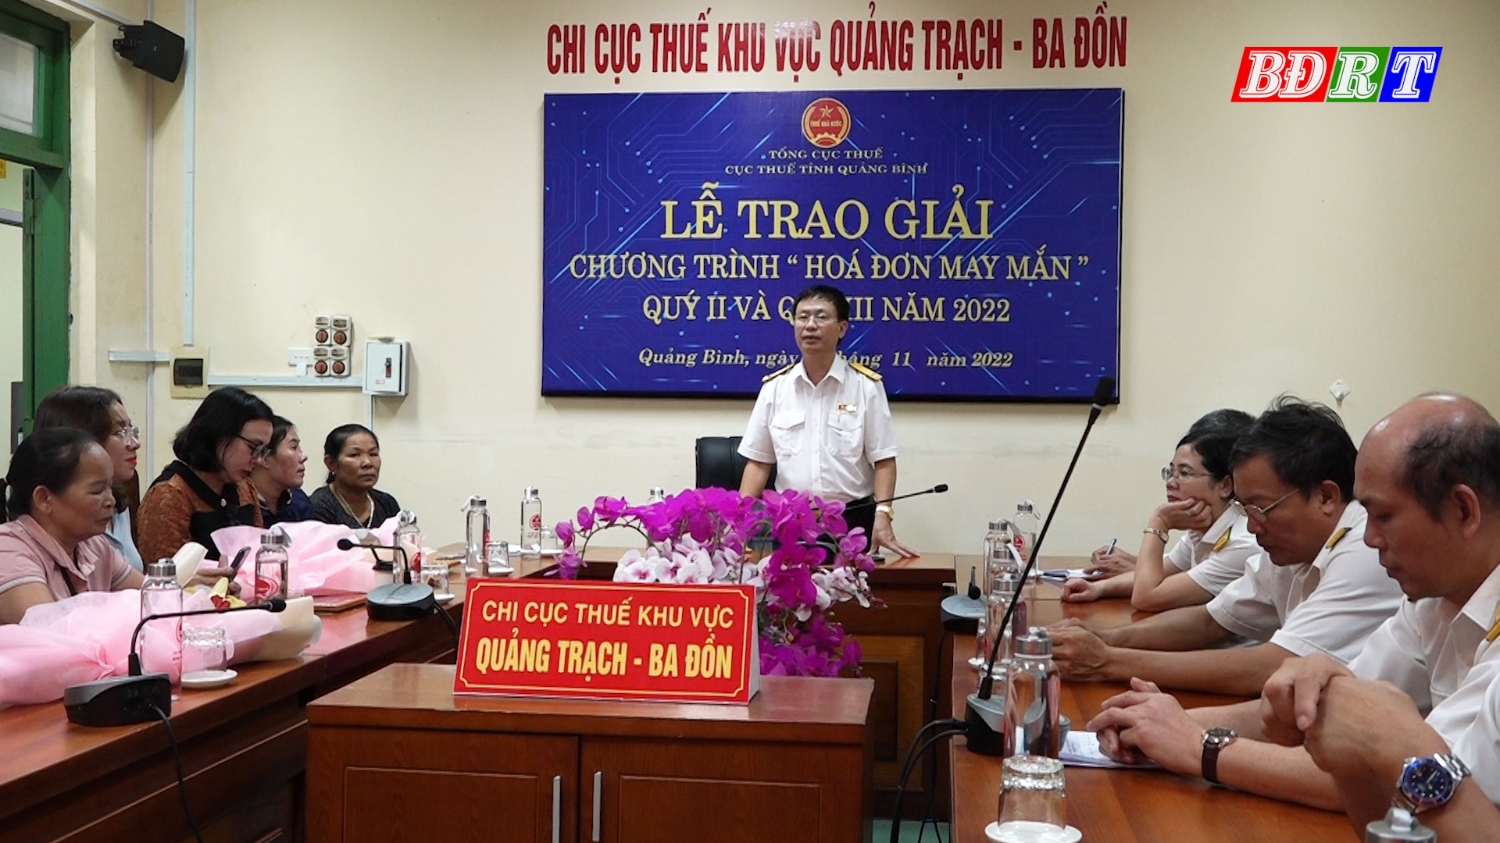 Toàn cảnh lễ trao giải chương trình Hóa đơn may mắn tại chi cục Thuế khu vực Quảng Trạch Ba Đồn